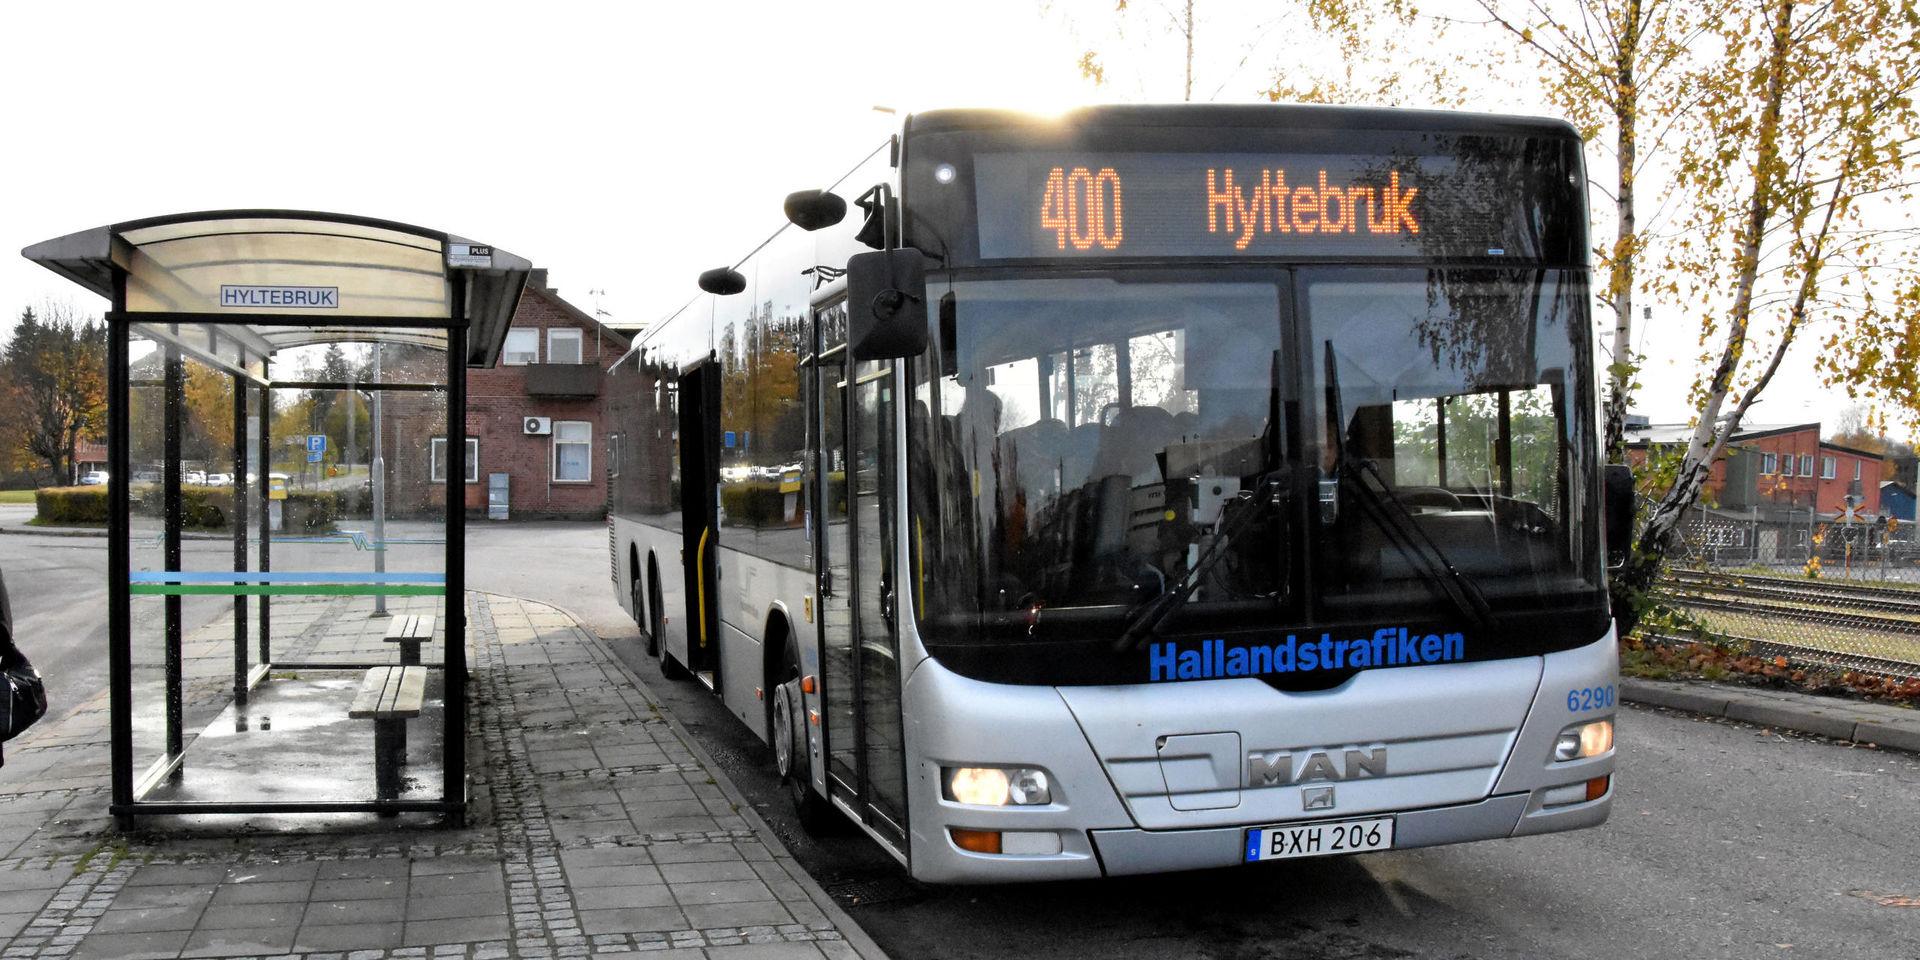 Buss 400 på Hyltebruks busstation.